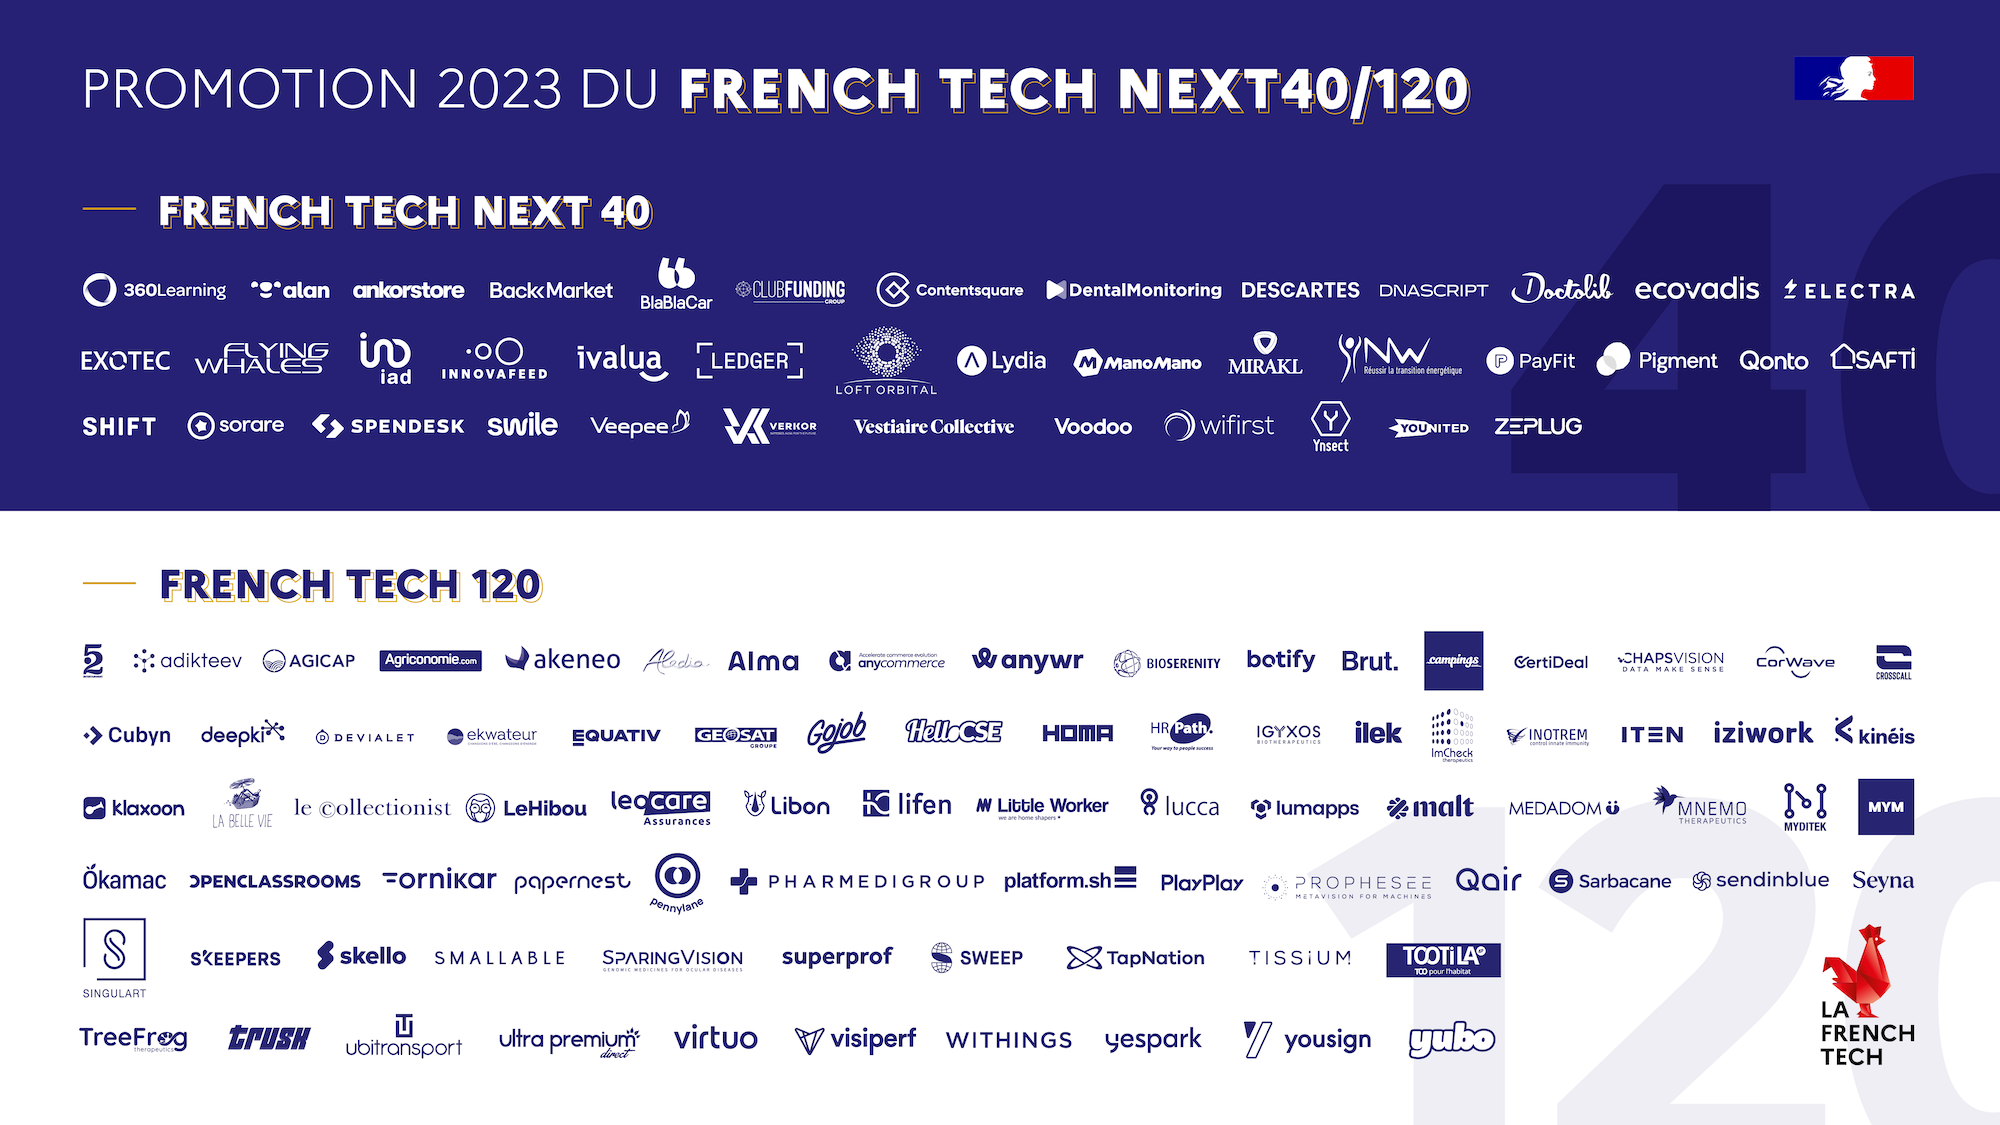 20230219_French-Tech-Next40_120_2023